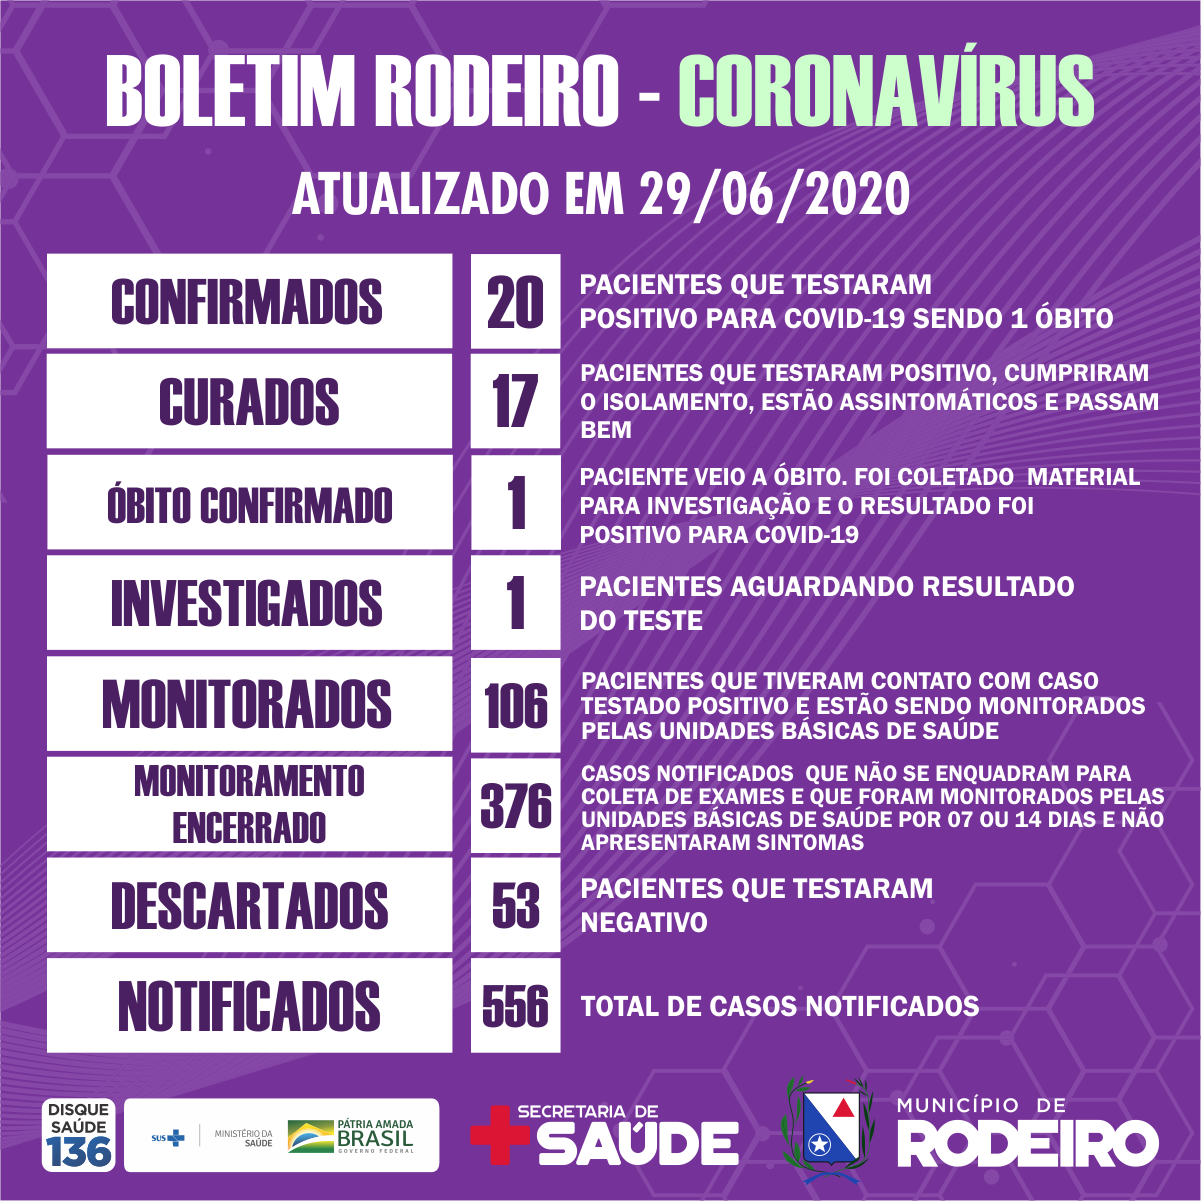 Boletim epidemiológico do Município de Rodeiro coronavírus, atualizado em 29/06/2020